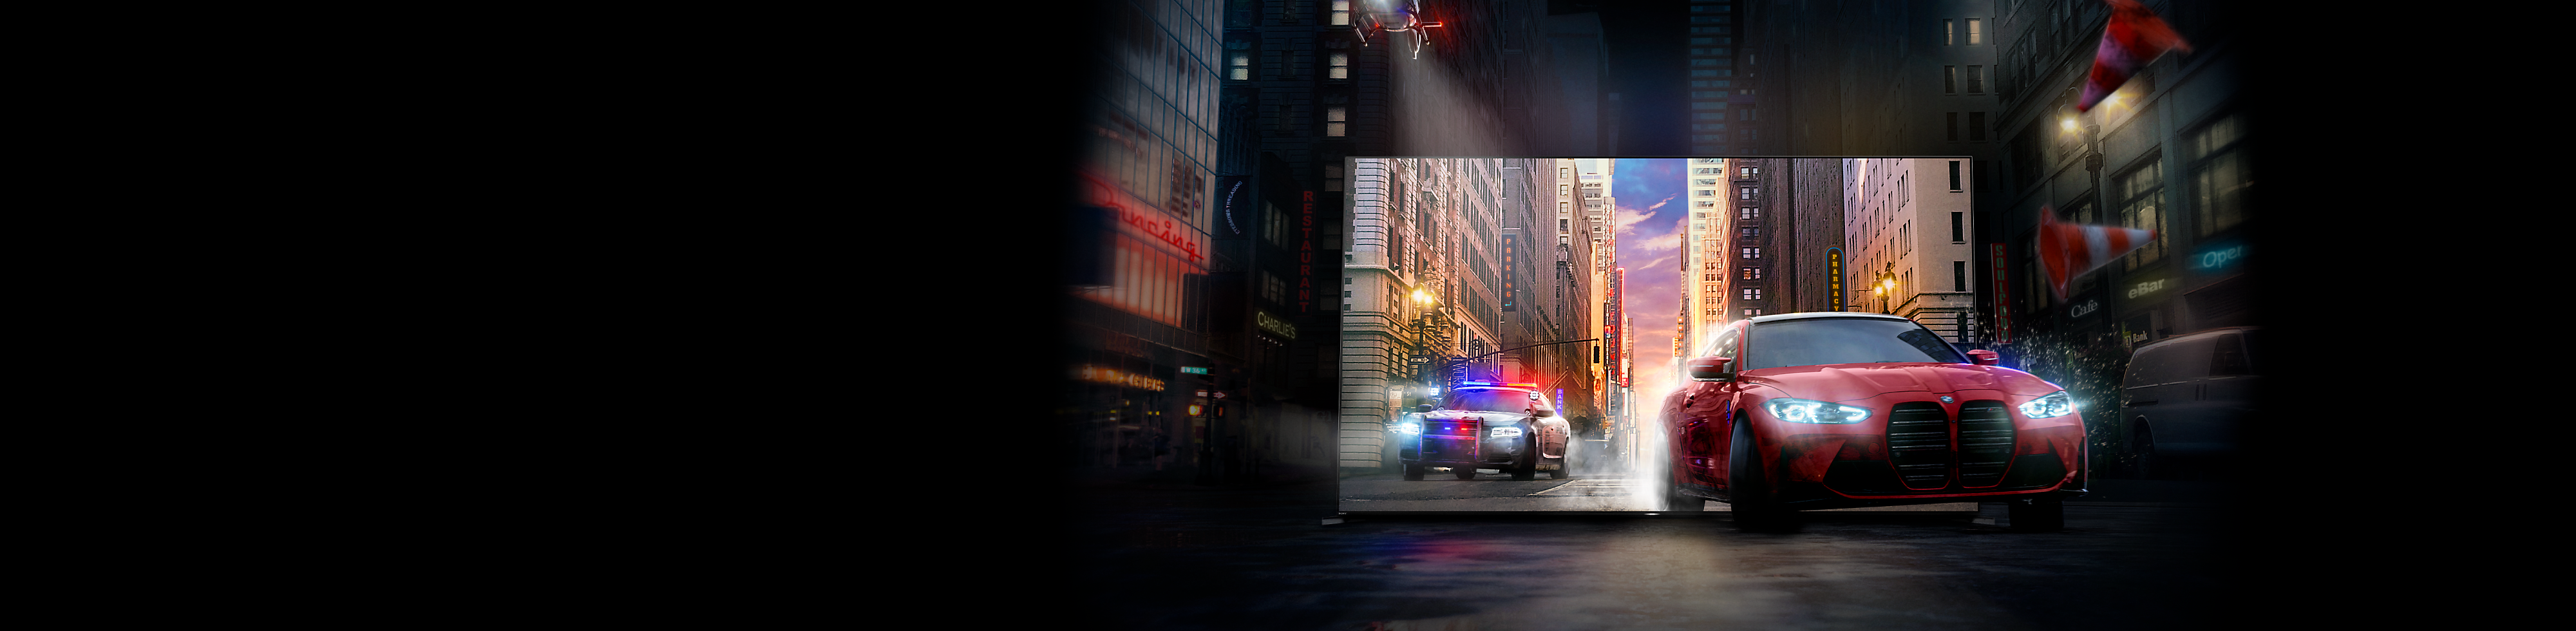 سيارة حمراء تتبعها سيارة شرطة تخرج من شاشة تلفزيون BRAVIA إلى شارع في مدينة